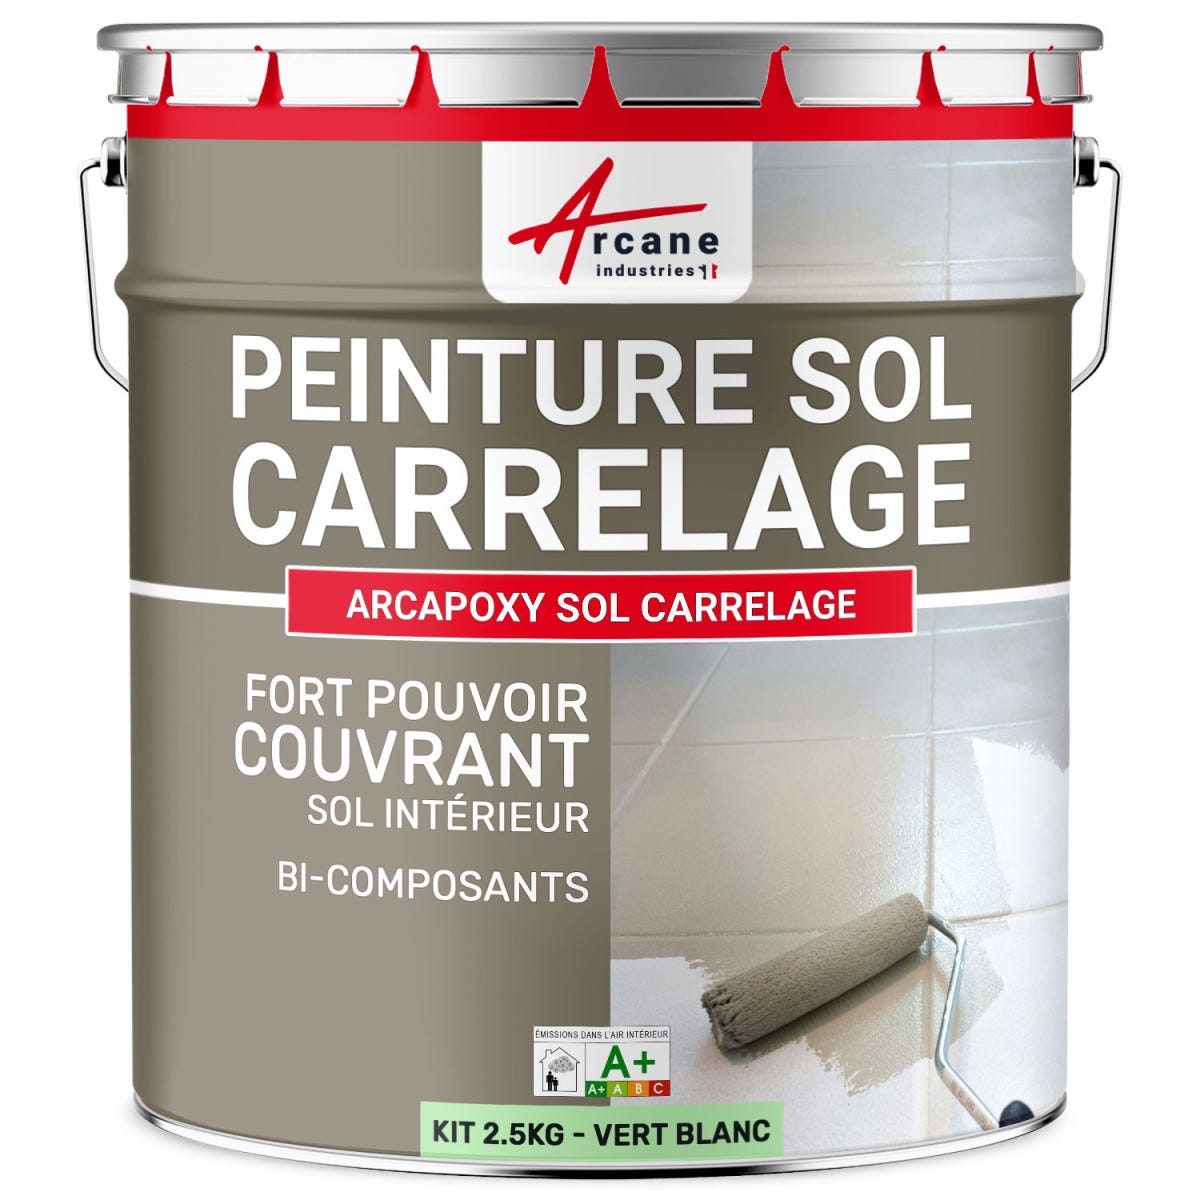 Peinture Résine Sol Carrelage - ARCAPOXY SOL CARRELAGE - 2.5 kg (jusqu'à 12.5 m² en 2 couches) - Vert Blanc - RAL 6019 - ARCANE INDUSTRIES 0